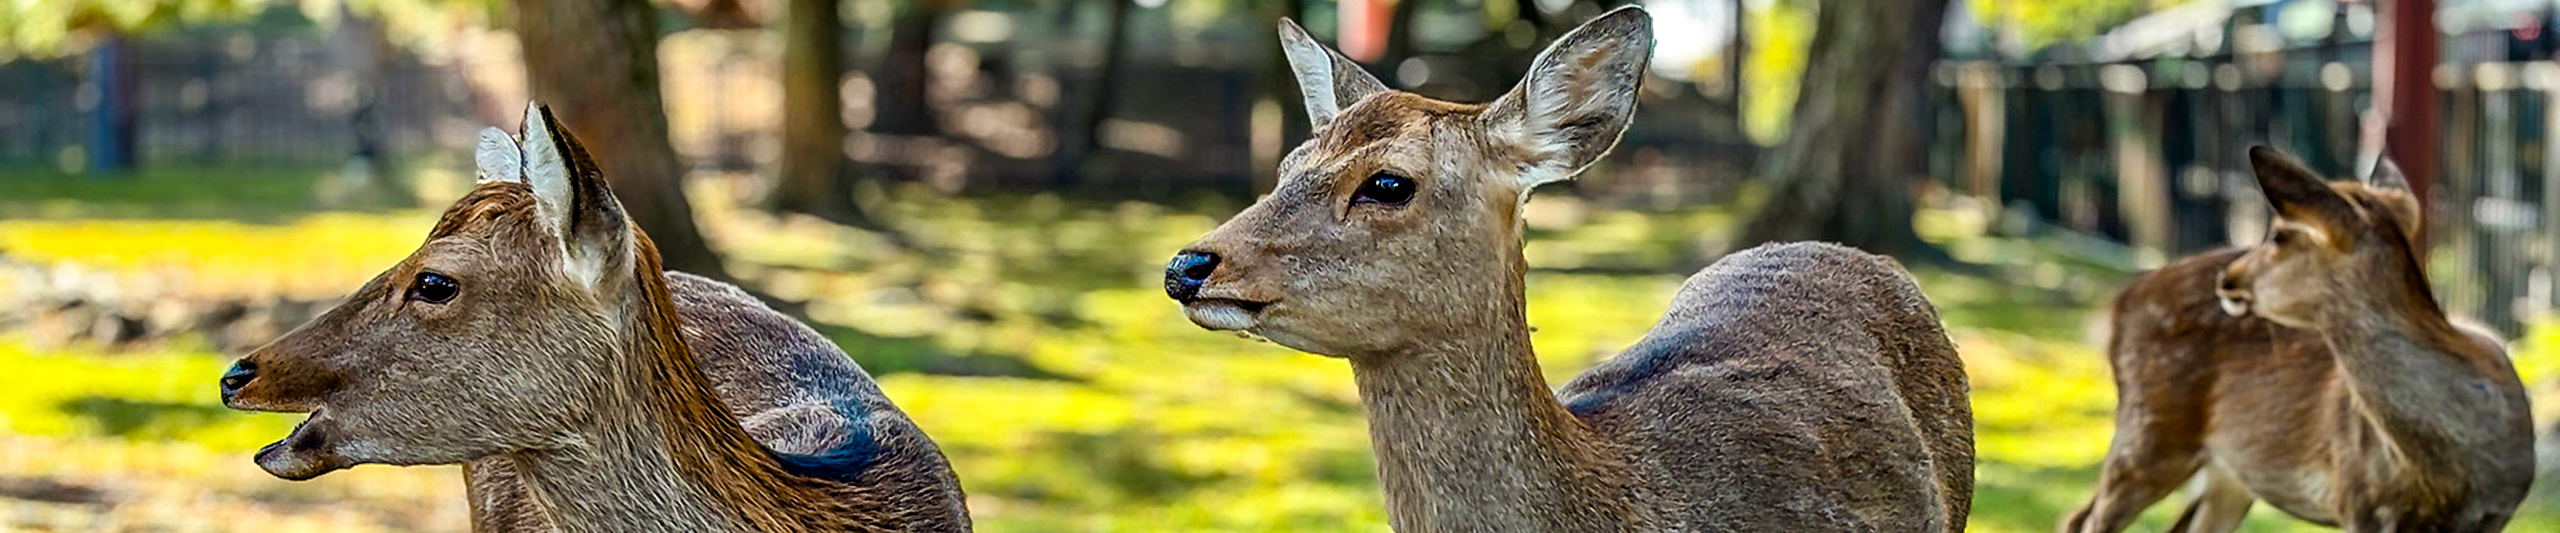 Cute Deer in Nara Park